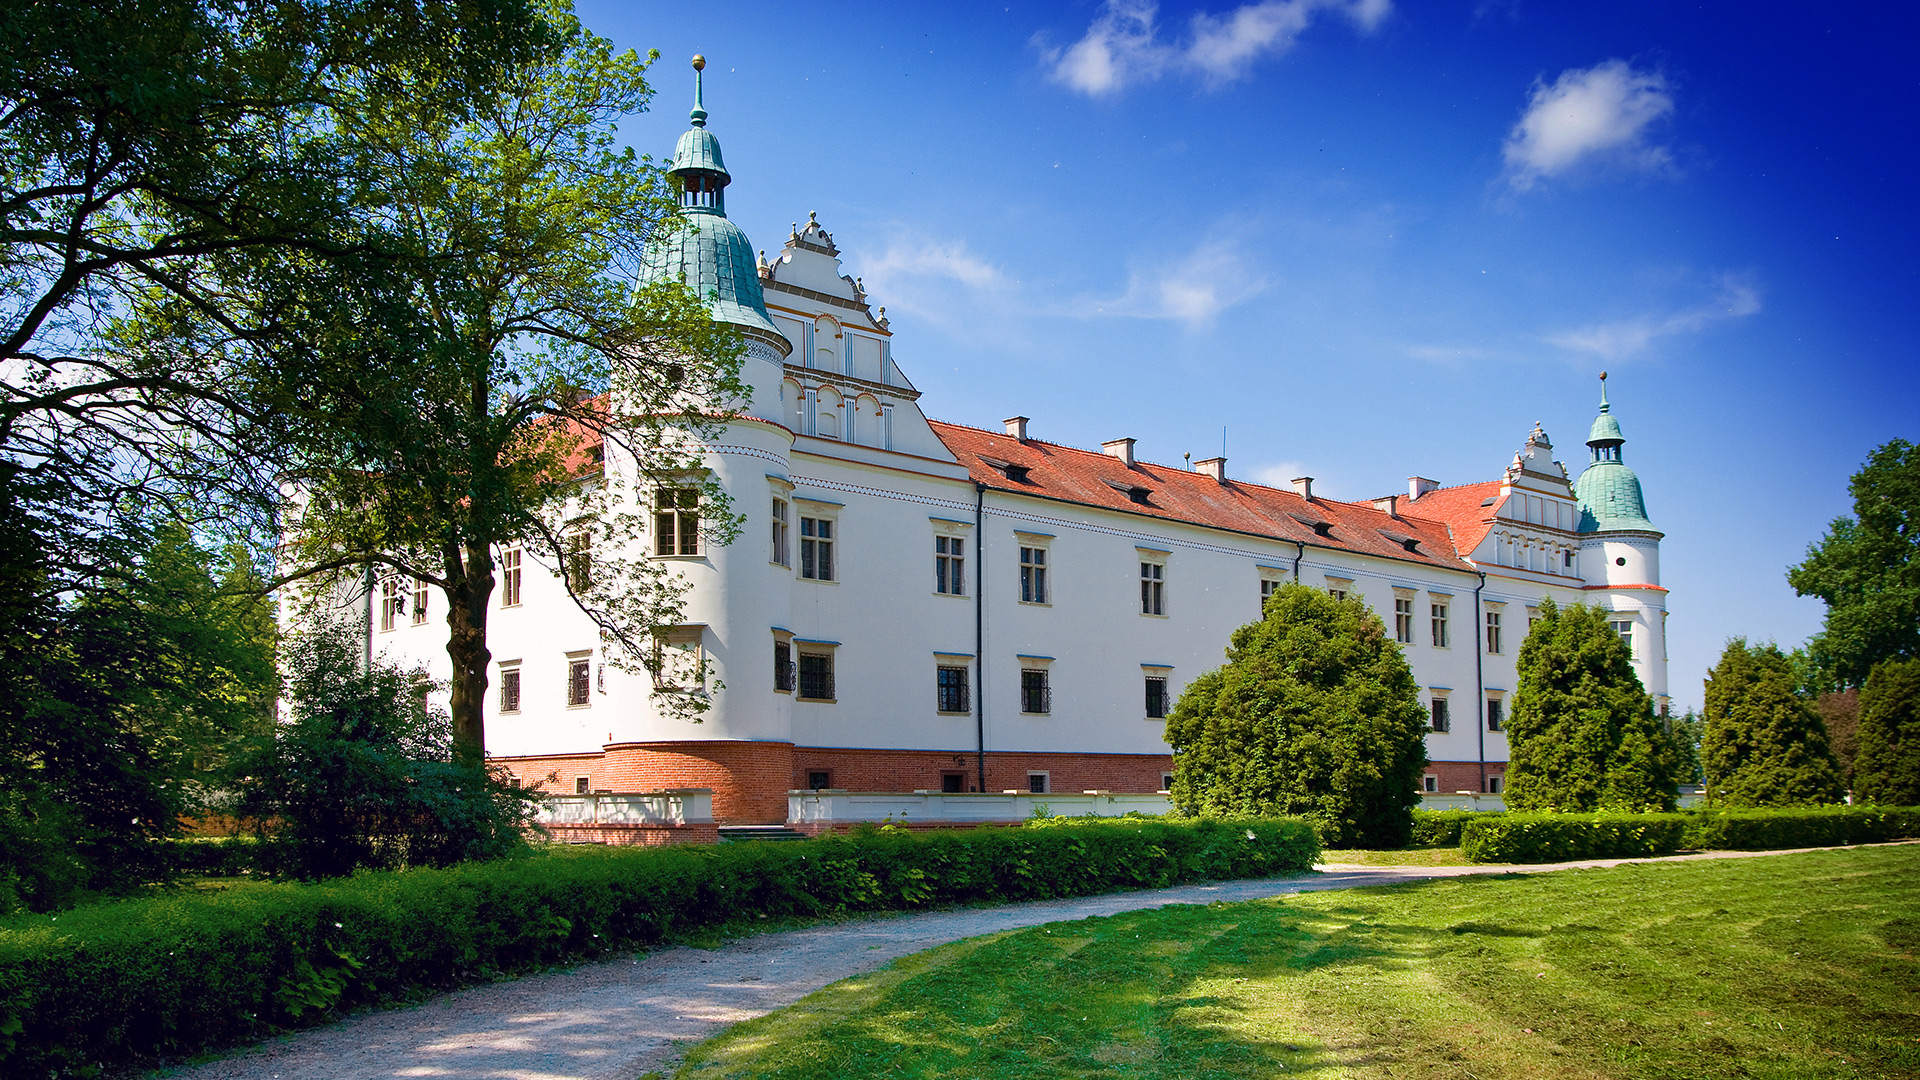 Baranów Sandomierski Castle #13